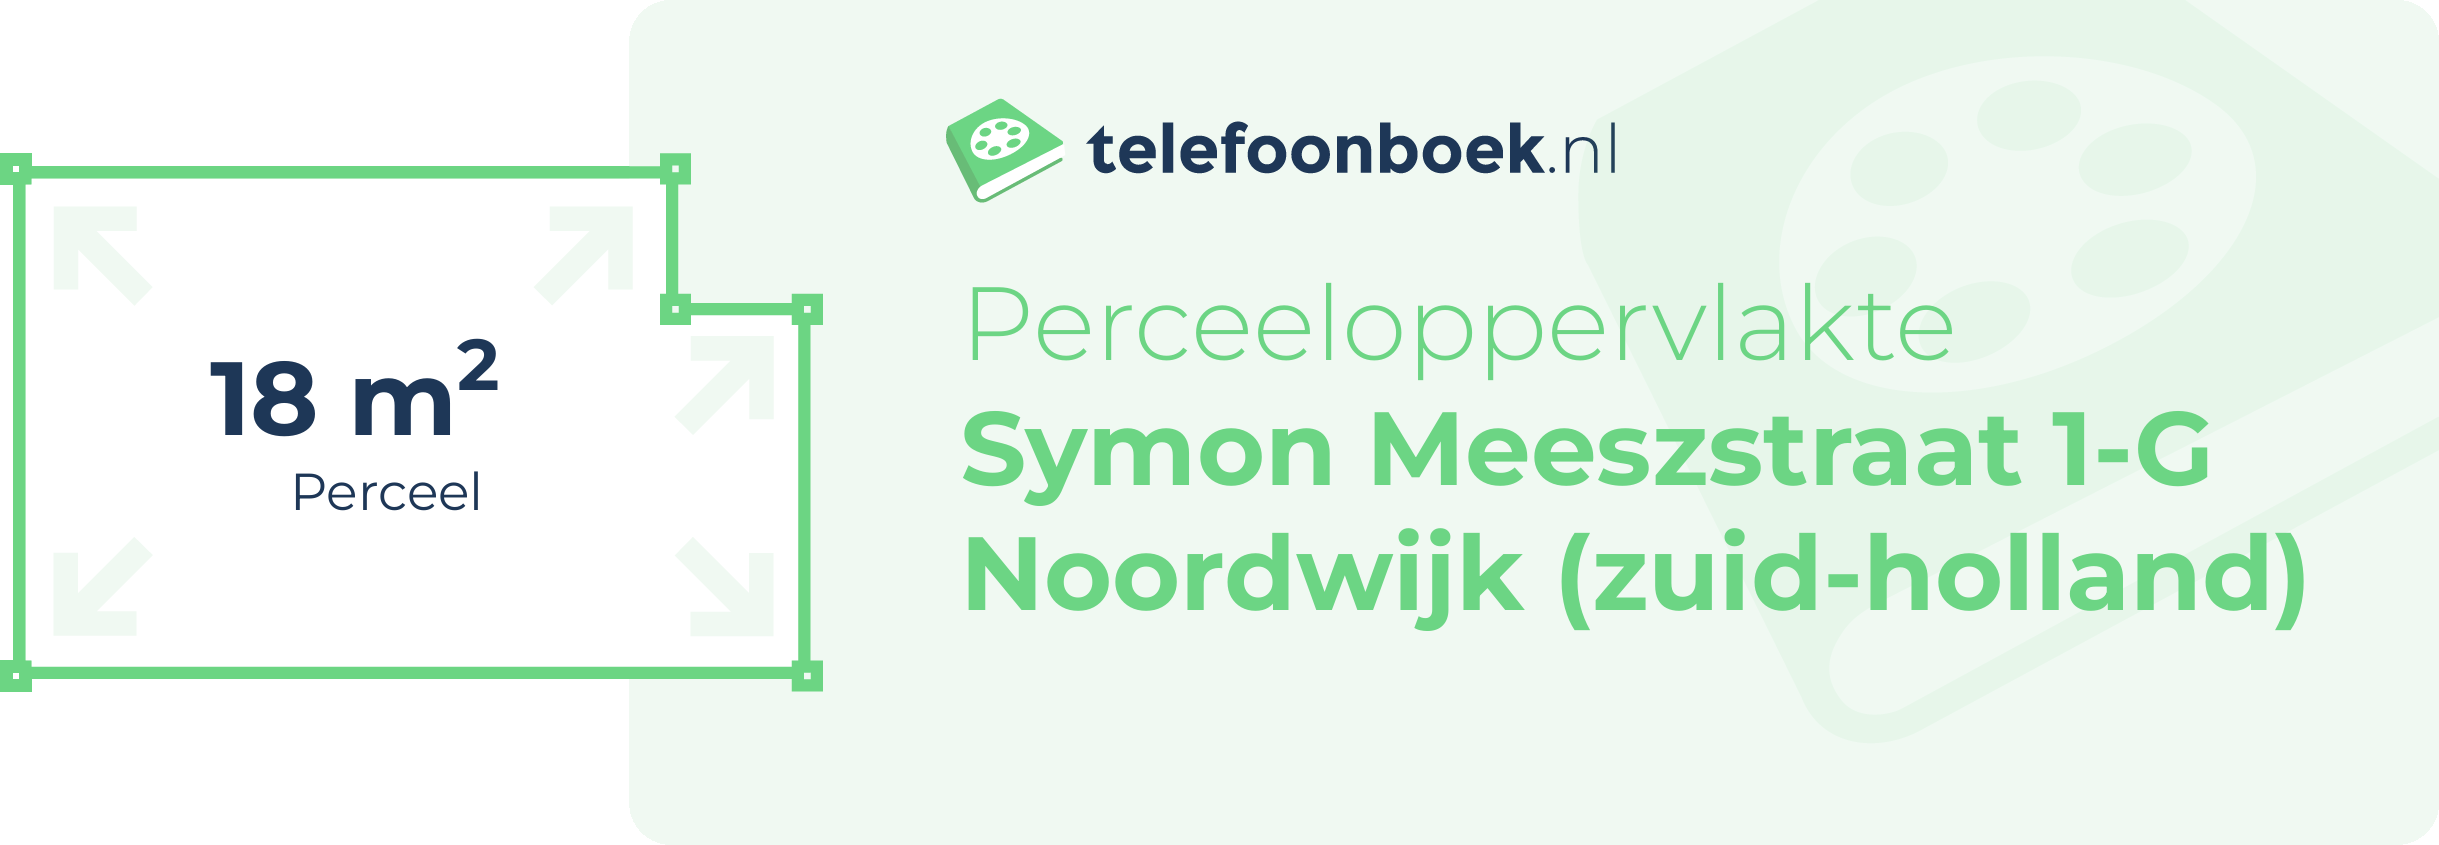 Perceeloppervlakte Symon Meeszstraat 1-G Noordwijk (Zuid-Holland)